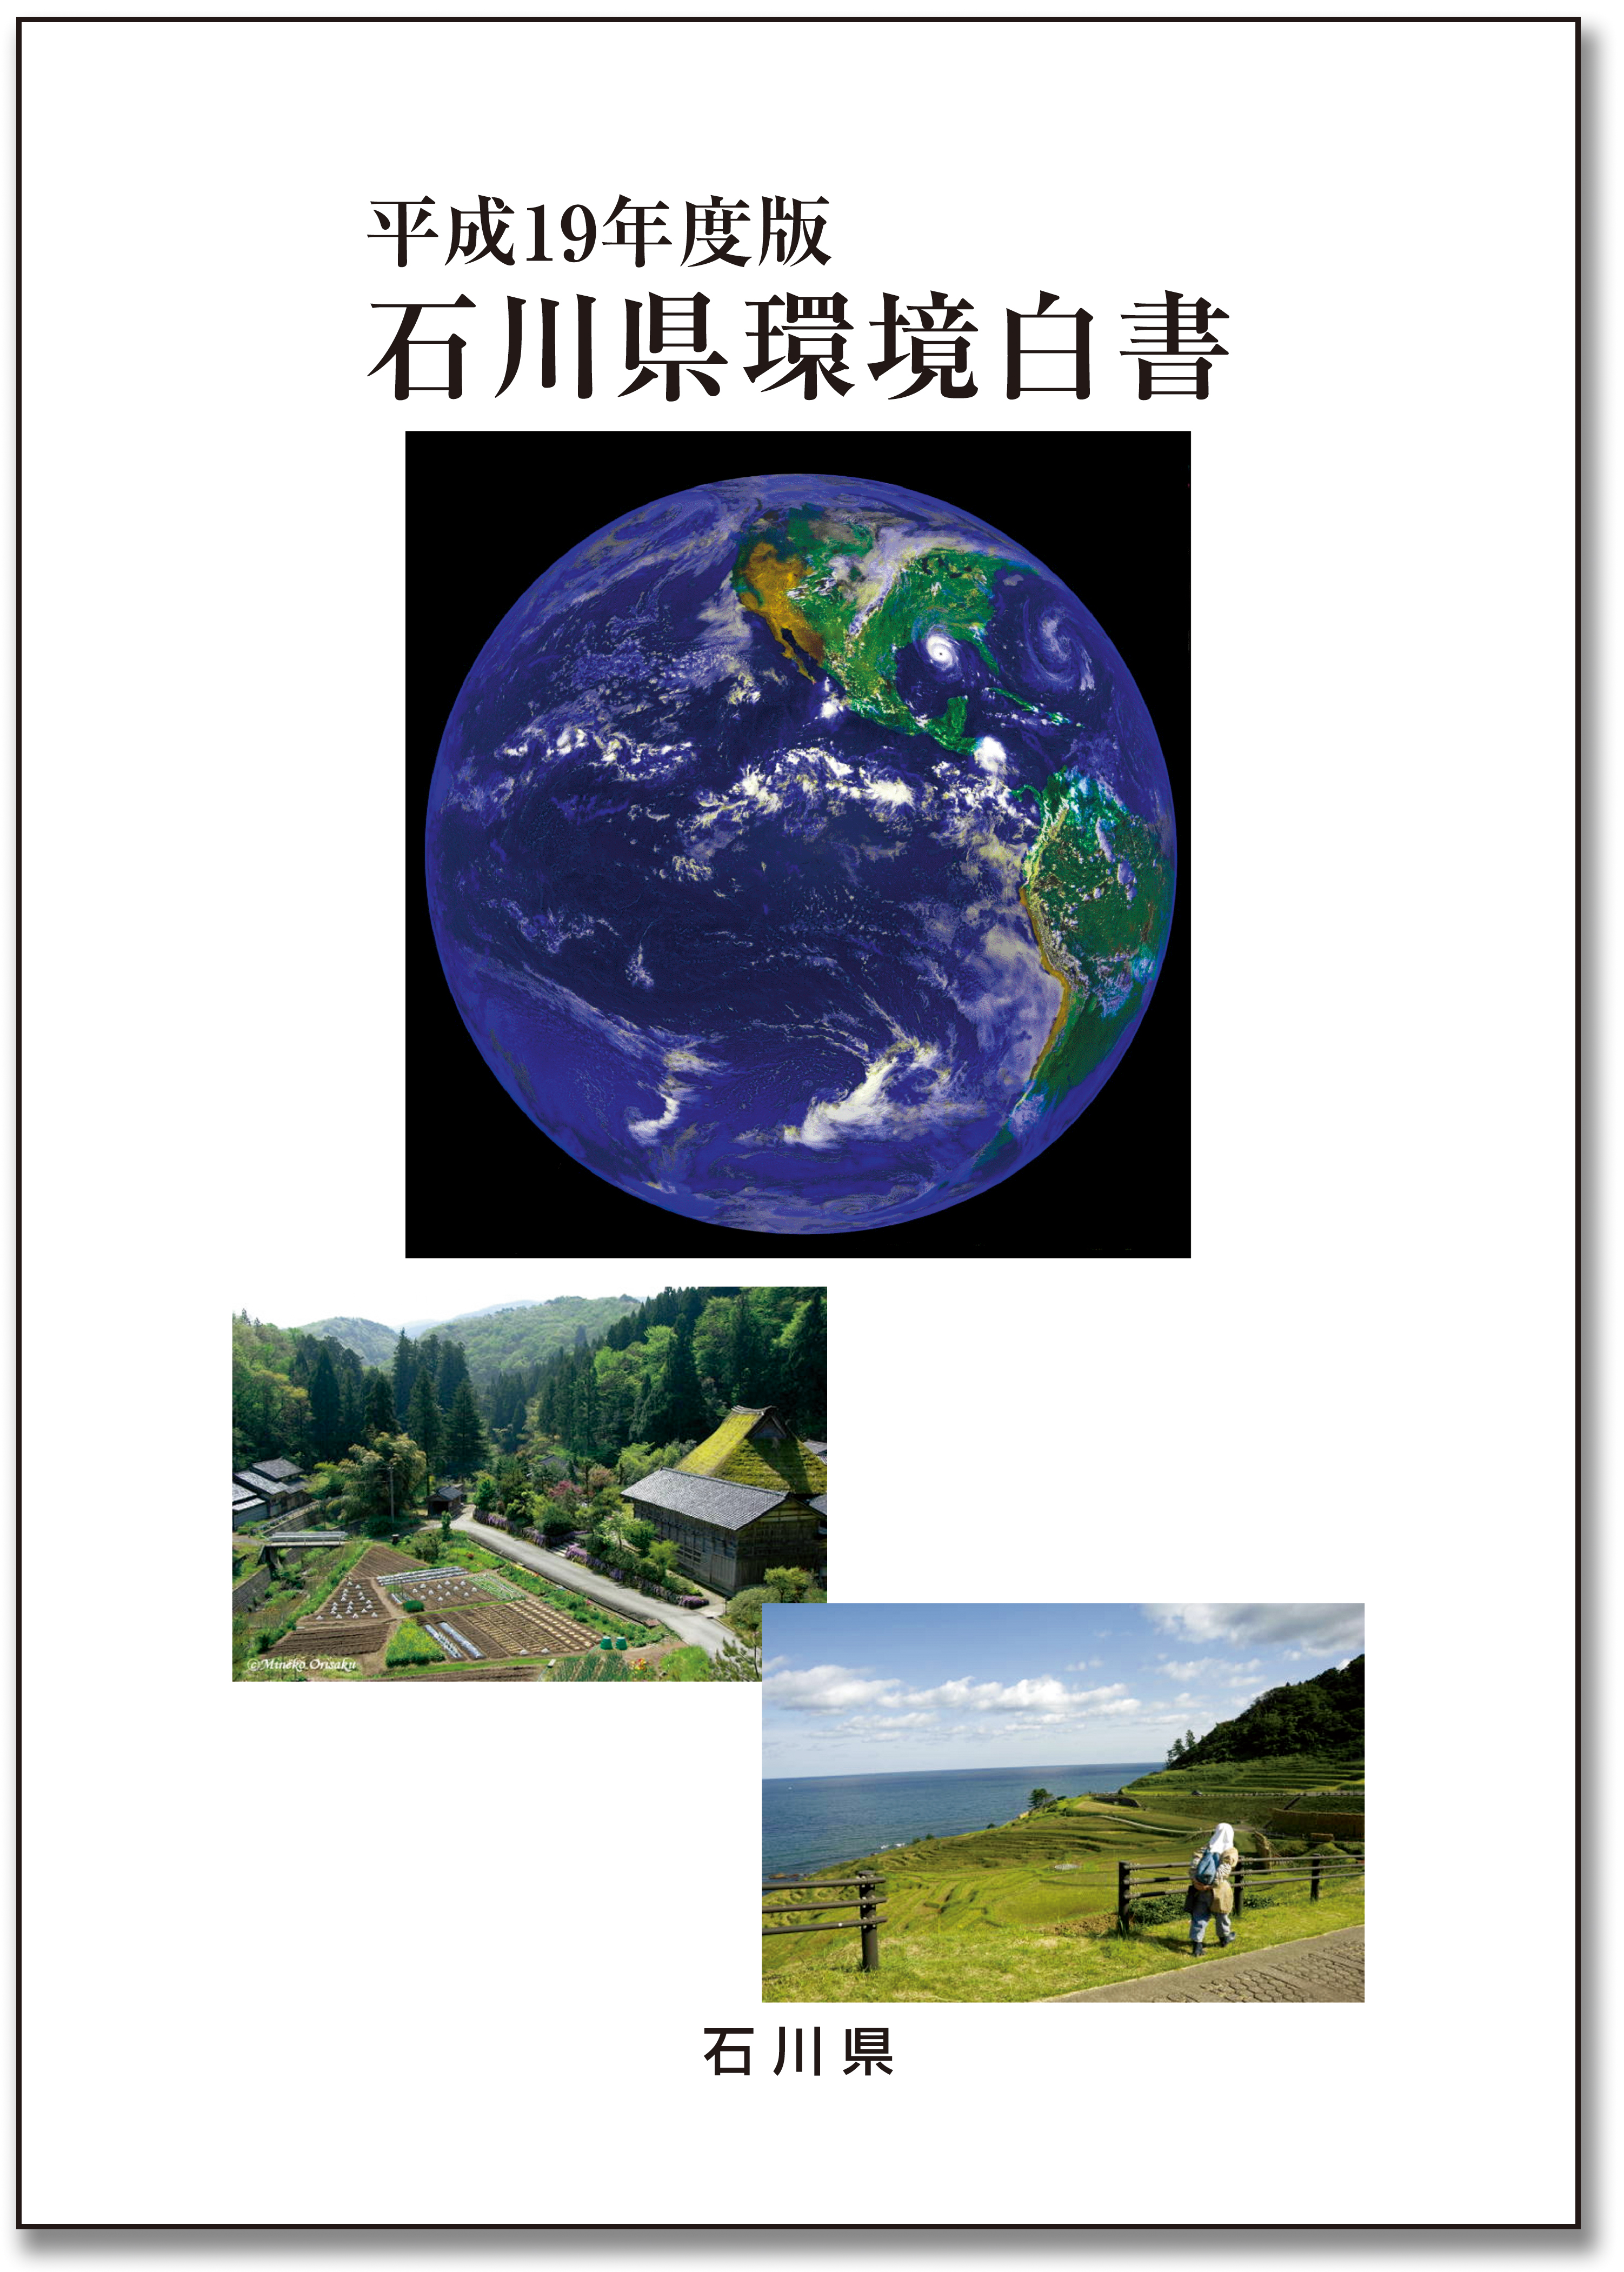 平成19年度版石川県環境白書